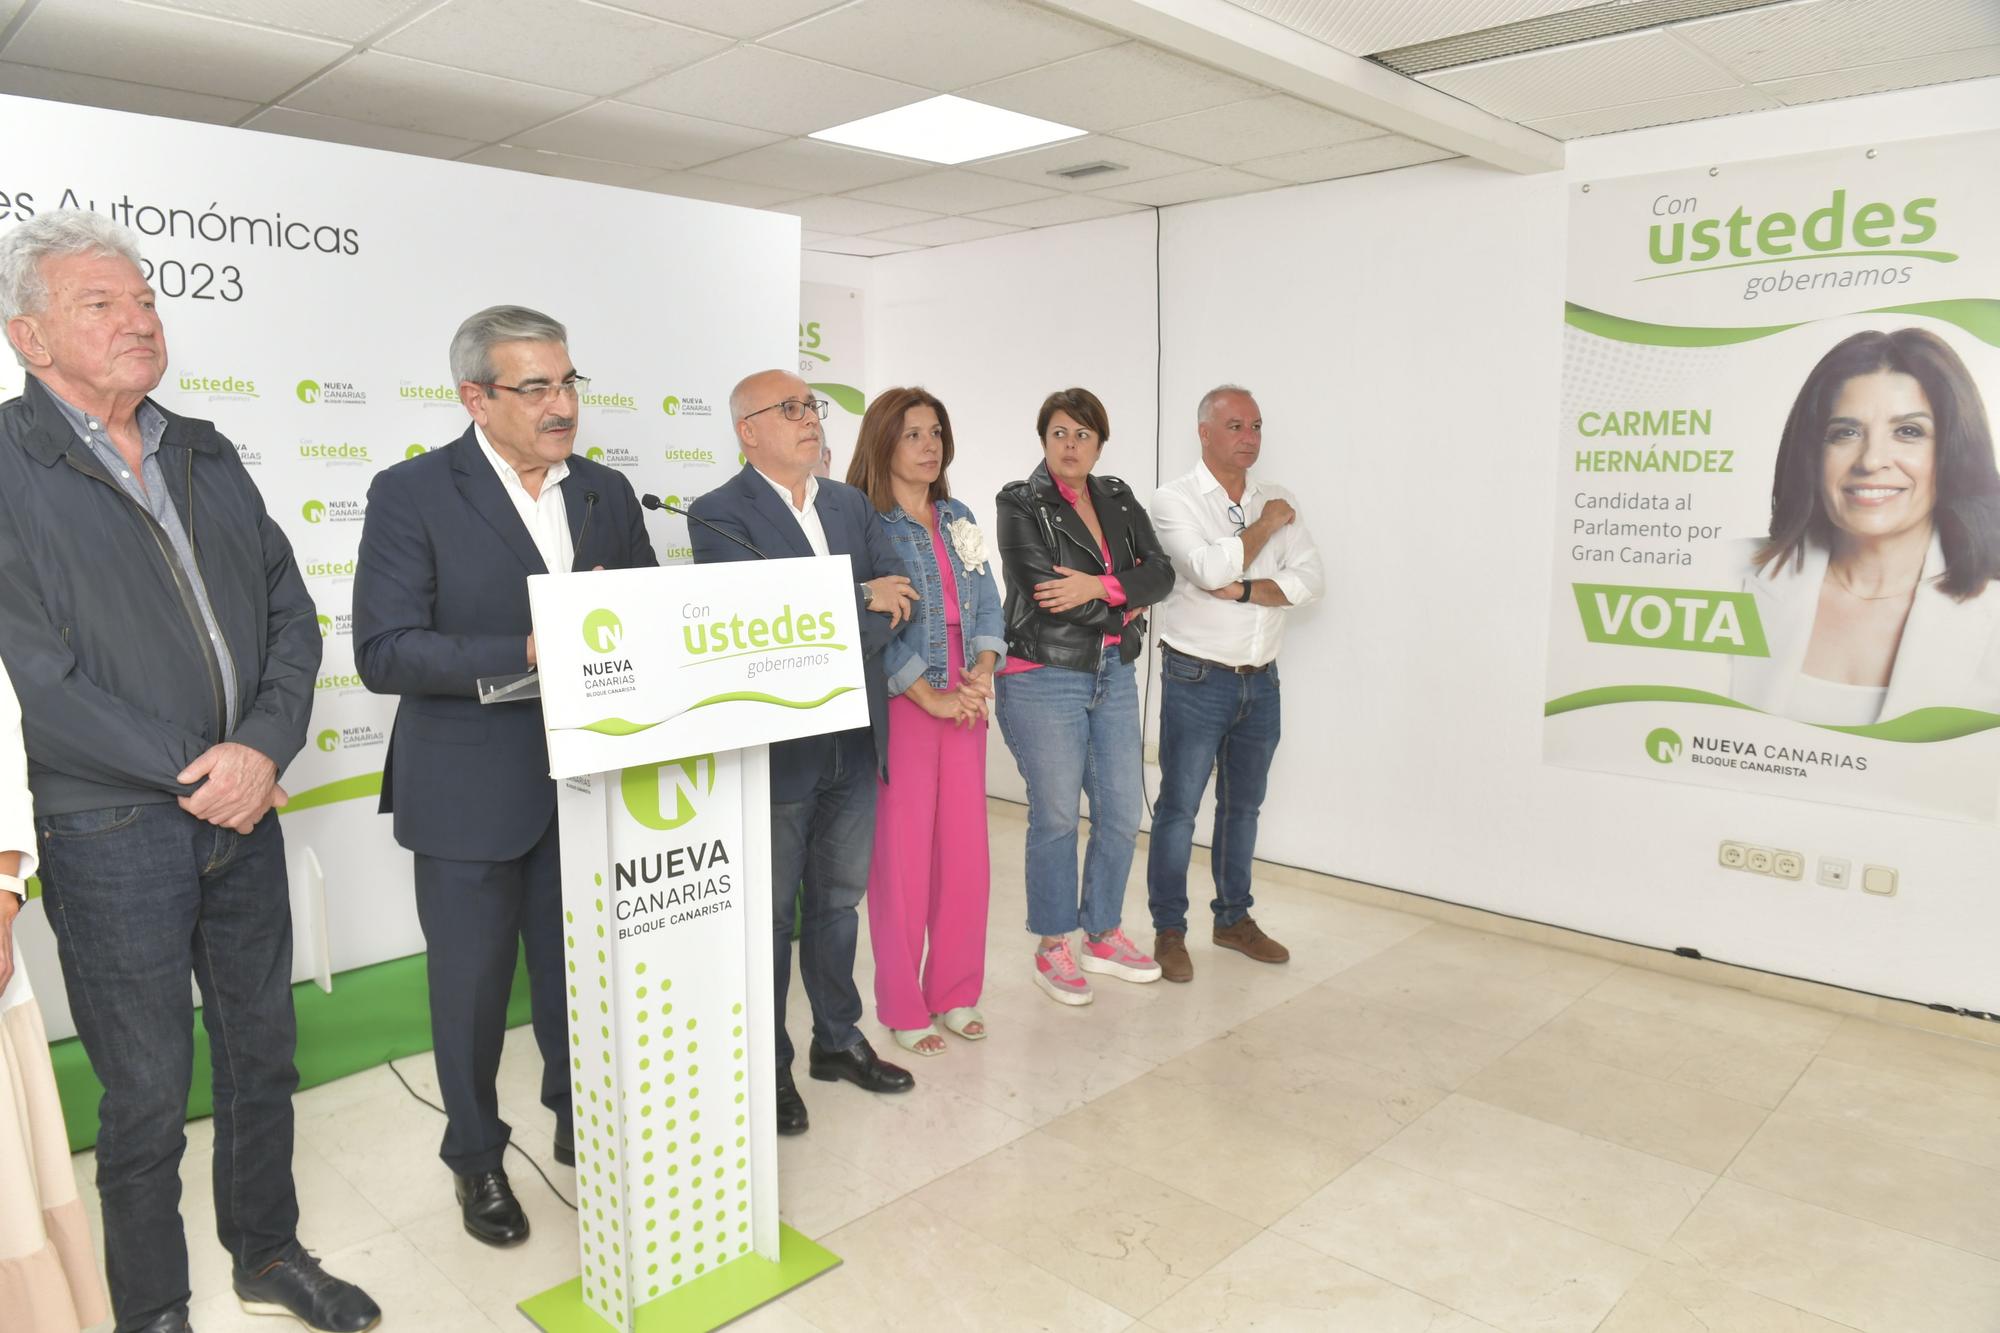 Noche electoral con Nueva Canarias